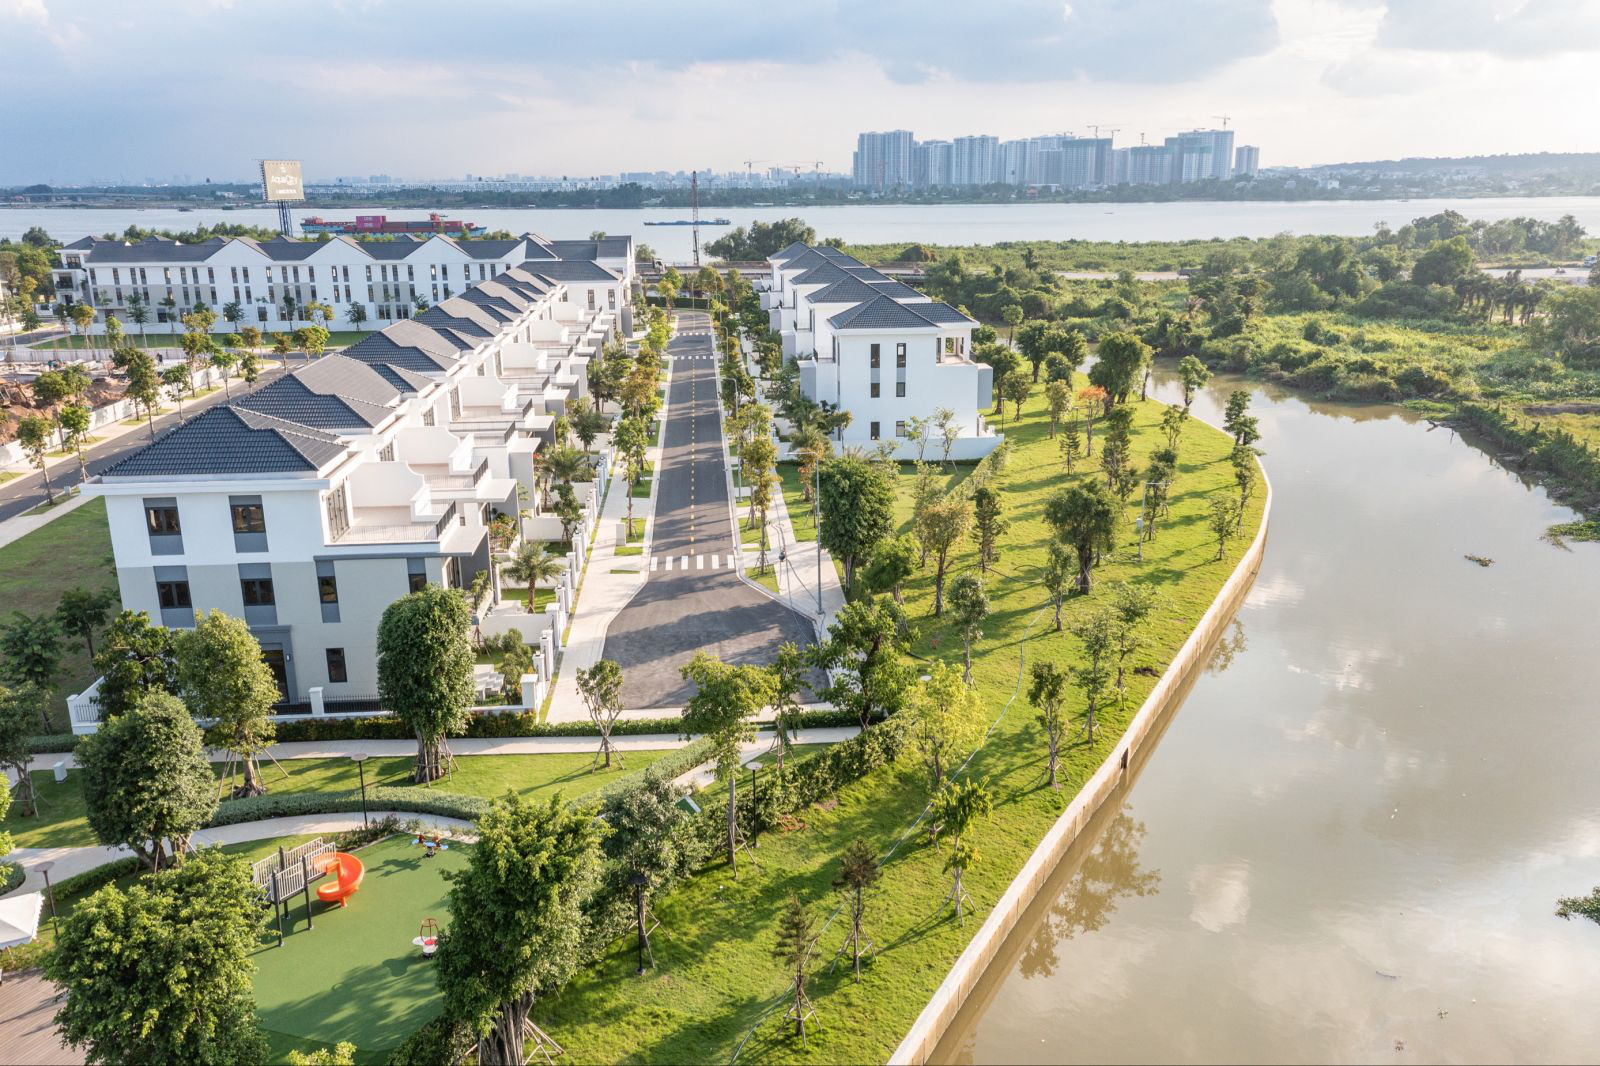 Aqua City - dự án đô thị sinh thái thông minh nổi bật ở phía Đông Sài Gòn. Ảnh: Novaland